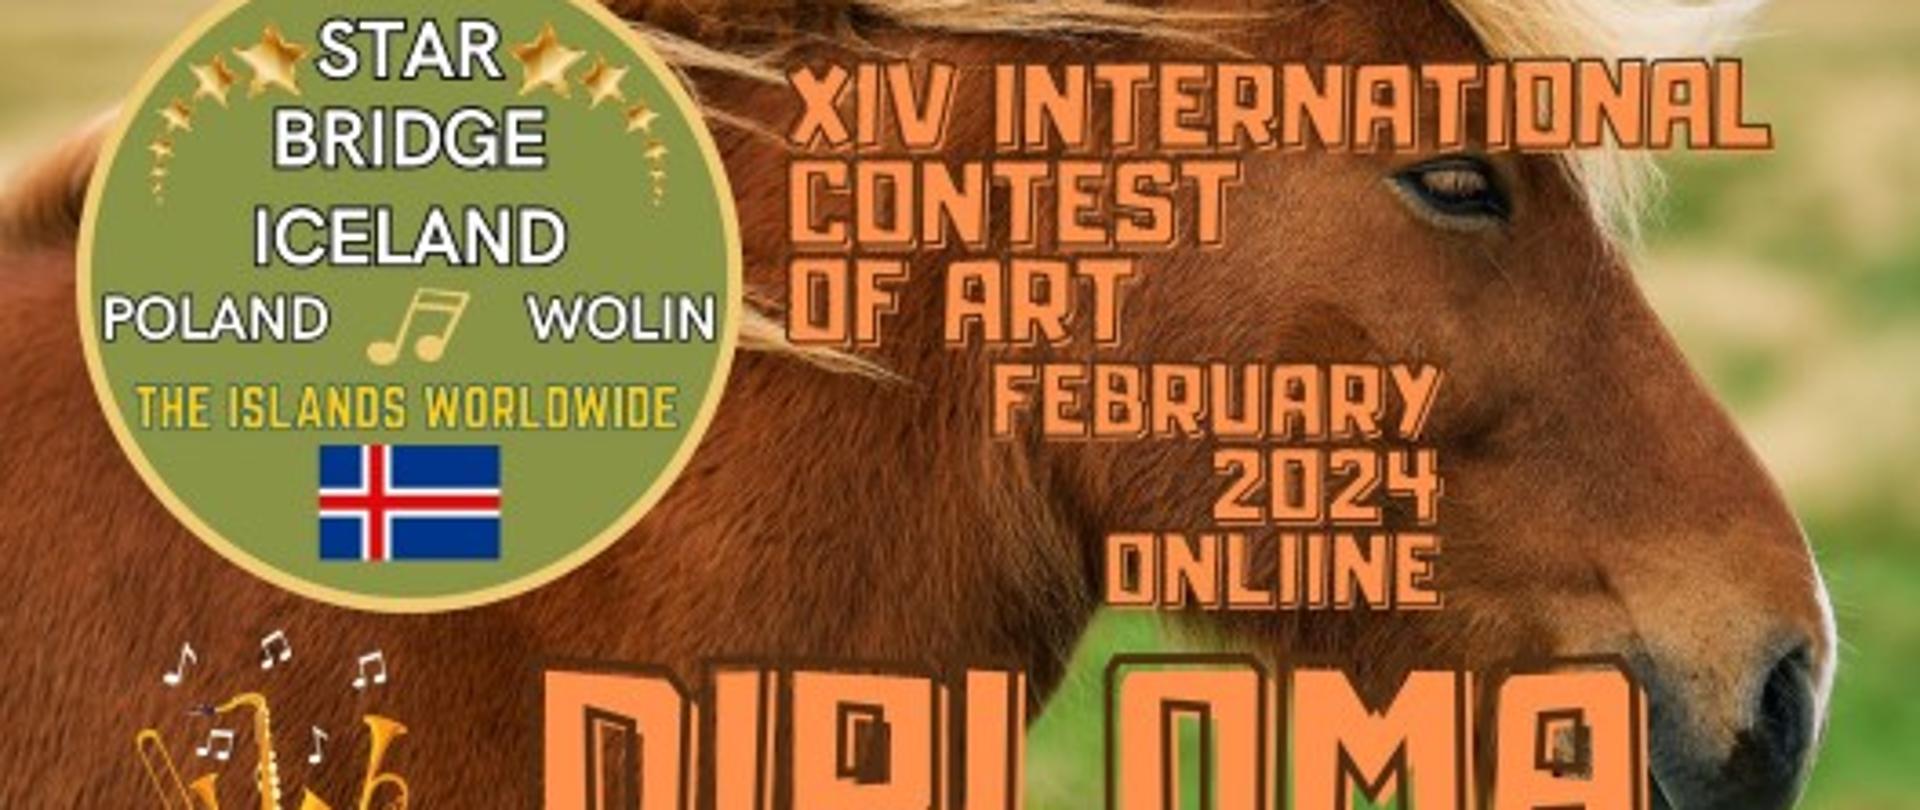 Dyplom za XIV International Contest of Art "Star Bridge of the Islands Worldwide Wolin- Islandia 2024: dyplom laureata dla Hanny Dorosz , zdjęcie brązowej głowy konia na tle zielonej trawy, po lewej nazwa konkursu wpisana w koło,